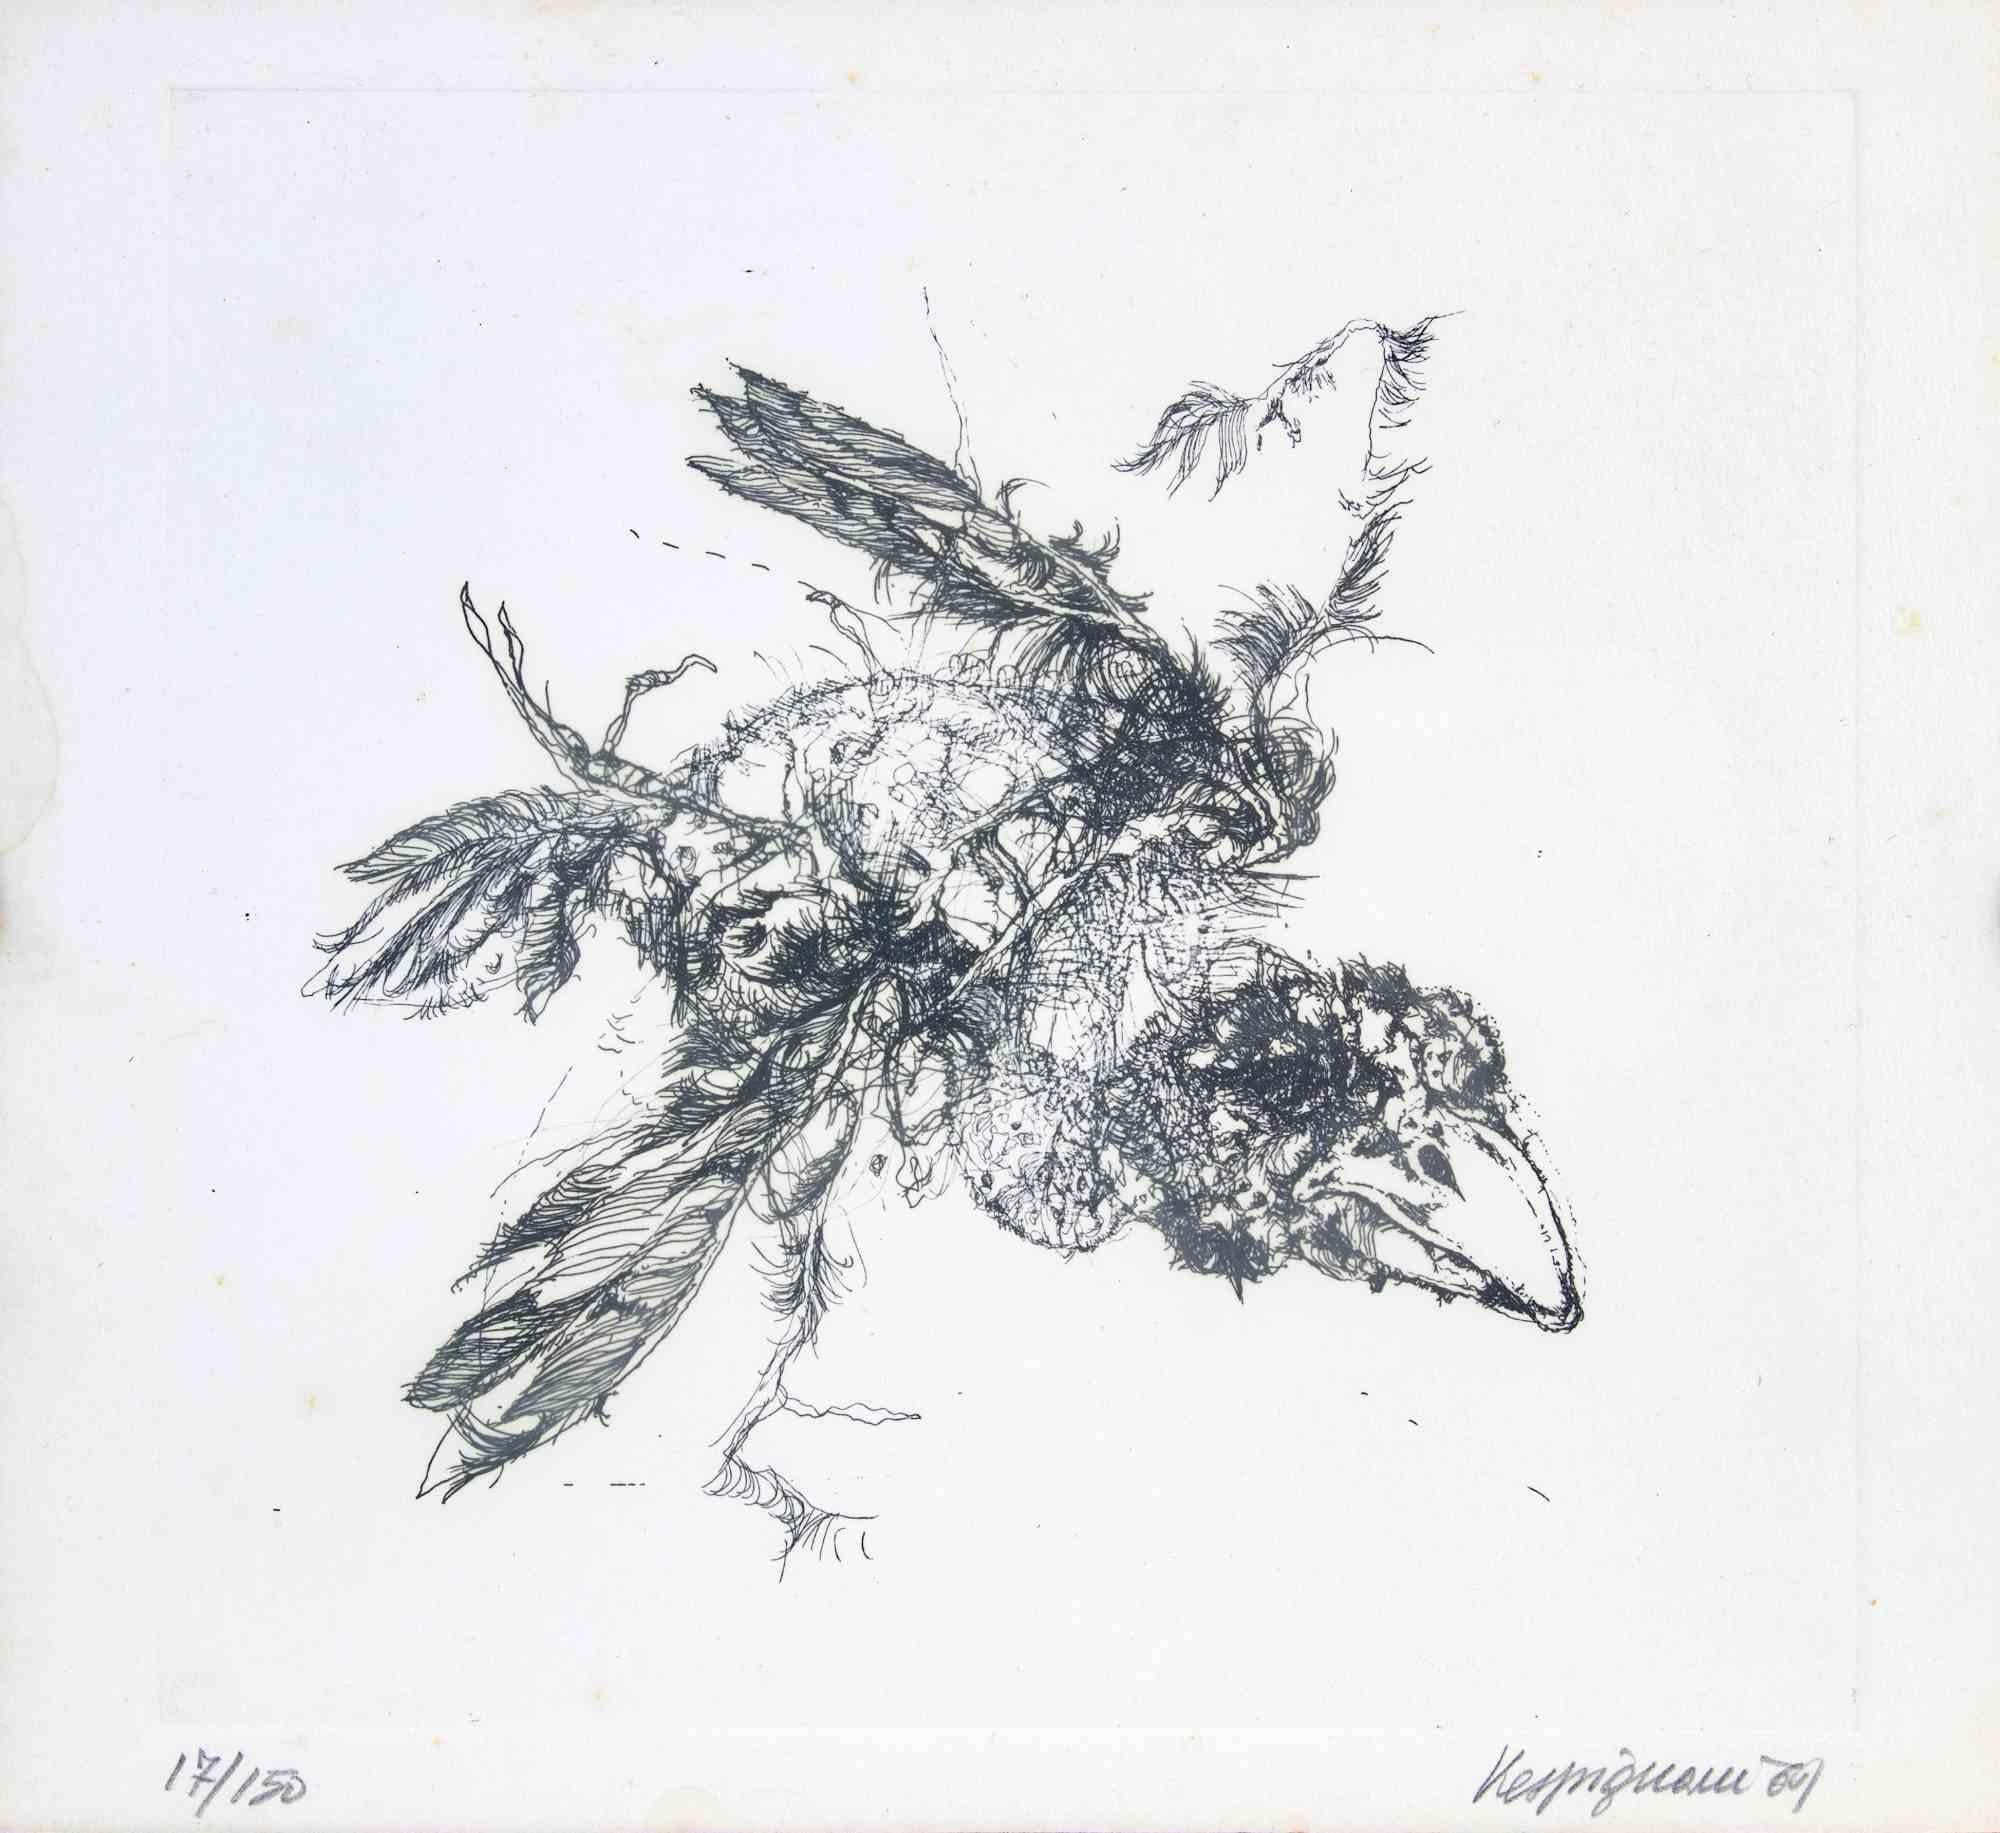 Bird ist ein modernes Kunstwerk von Renzo Vespignani aus dem Jahr 1969.

Schwarz-Weiß-Lithographie.

Am unteren Rand handsigniert, datiert und nummeriert.

Auflage von 17/50.